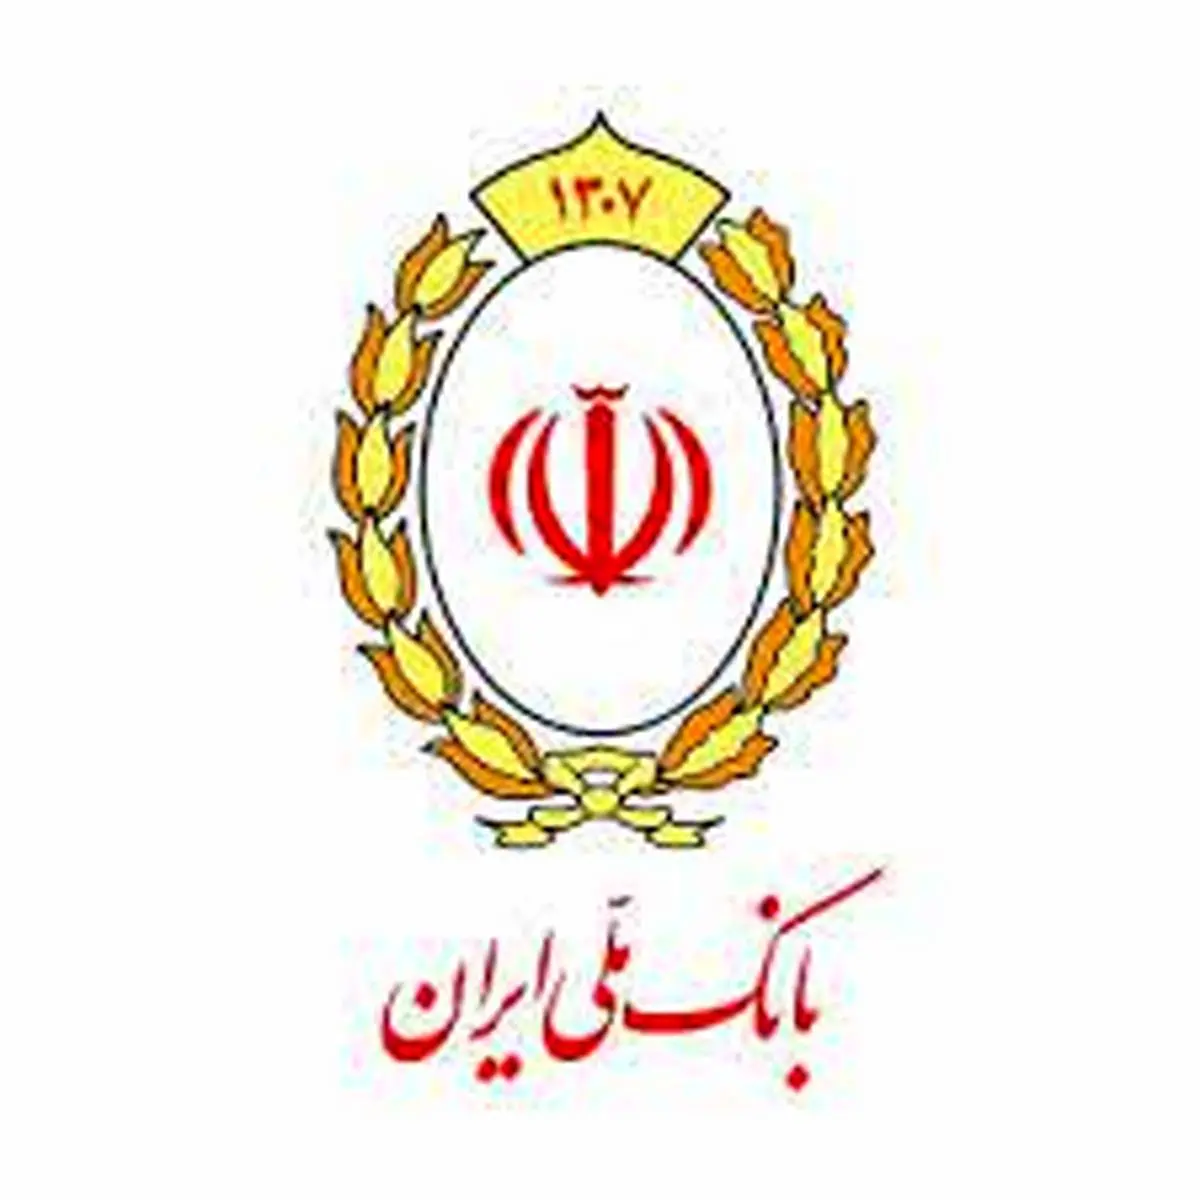 متفاوت ترین شعبه بانک ملی ایران را ببینید

